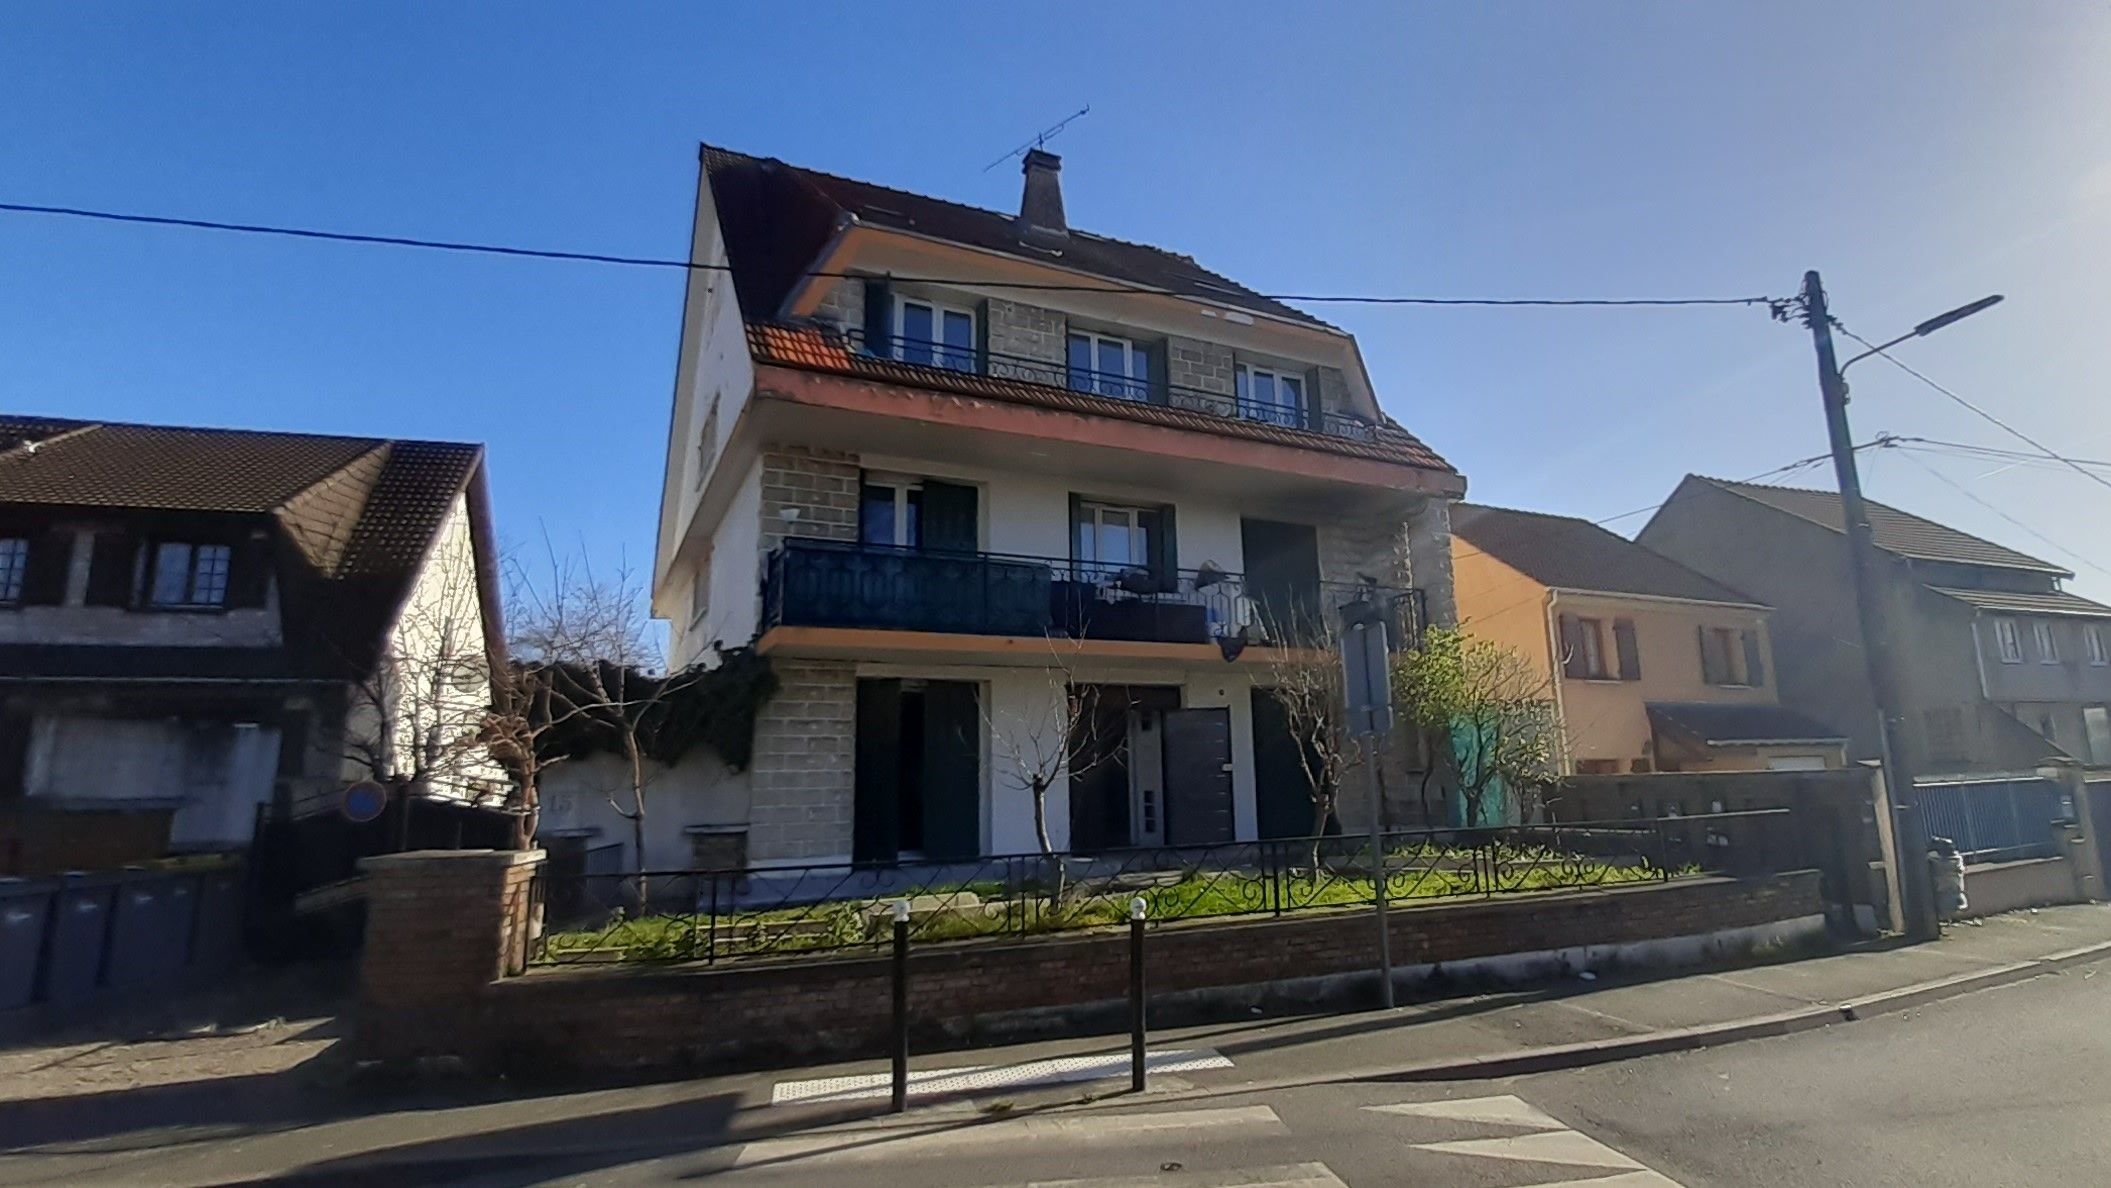 Garges-lès-Gonesse (Val-d'Oise). Le drame s'est déroulé dans un appartement situé au rez-de-chaussée de cette maison, rue de la Paix, où Lucie vivait depuis son enfance. LP/Fr.N.